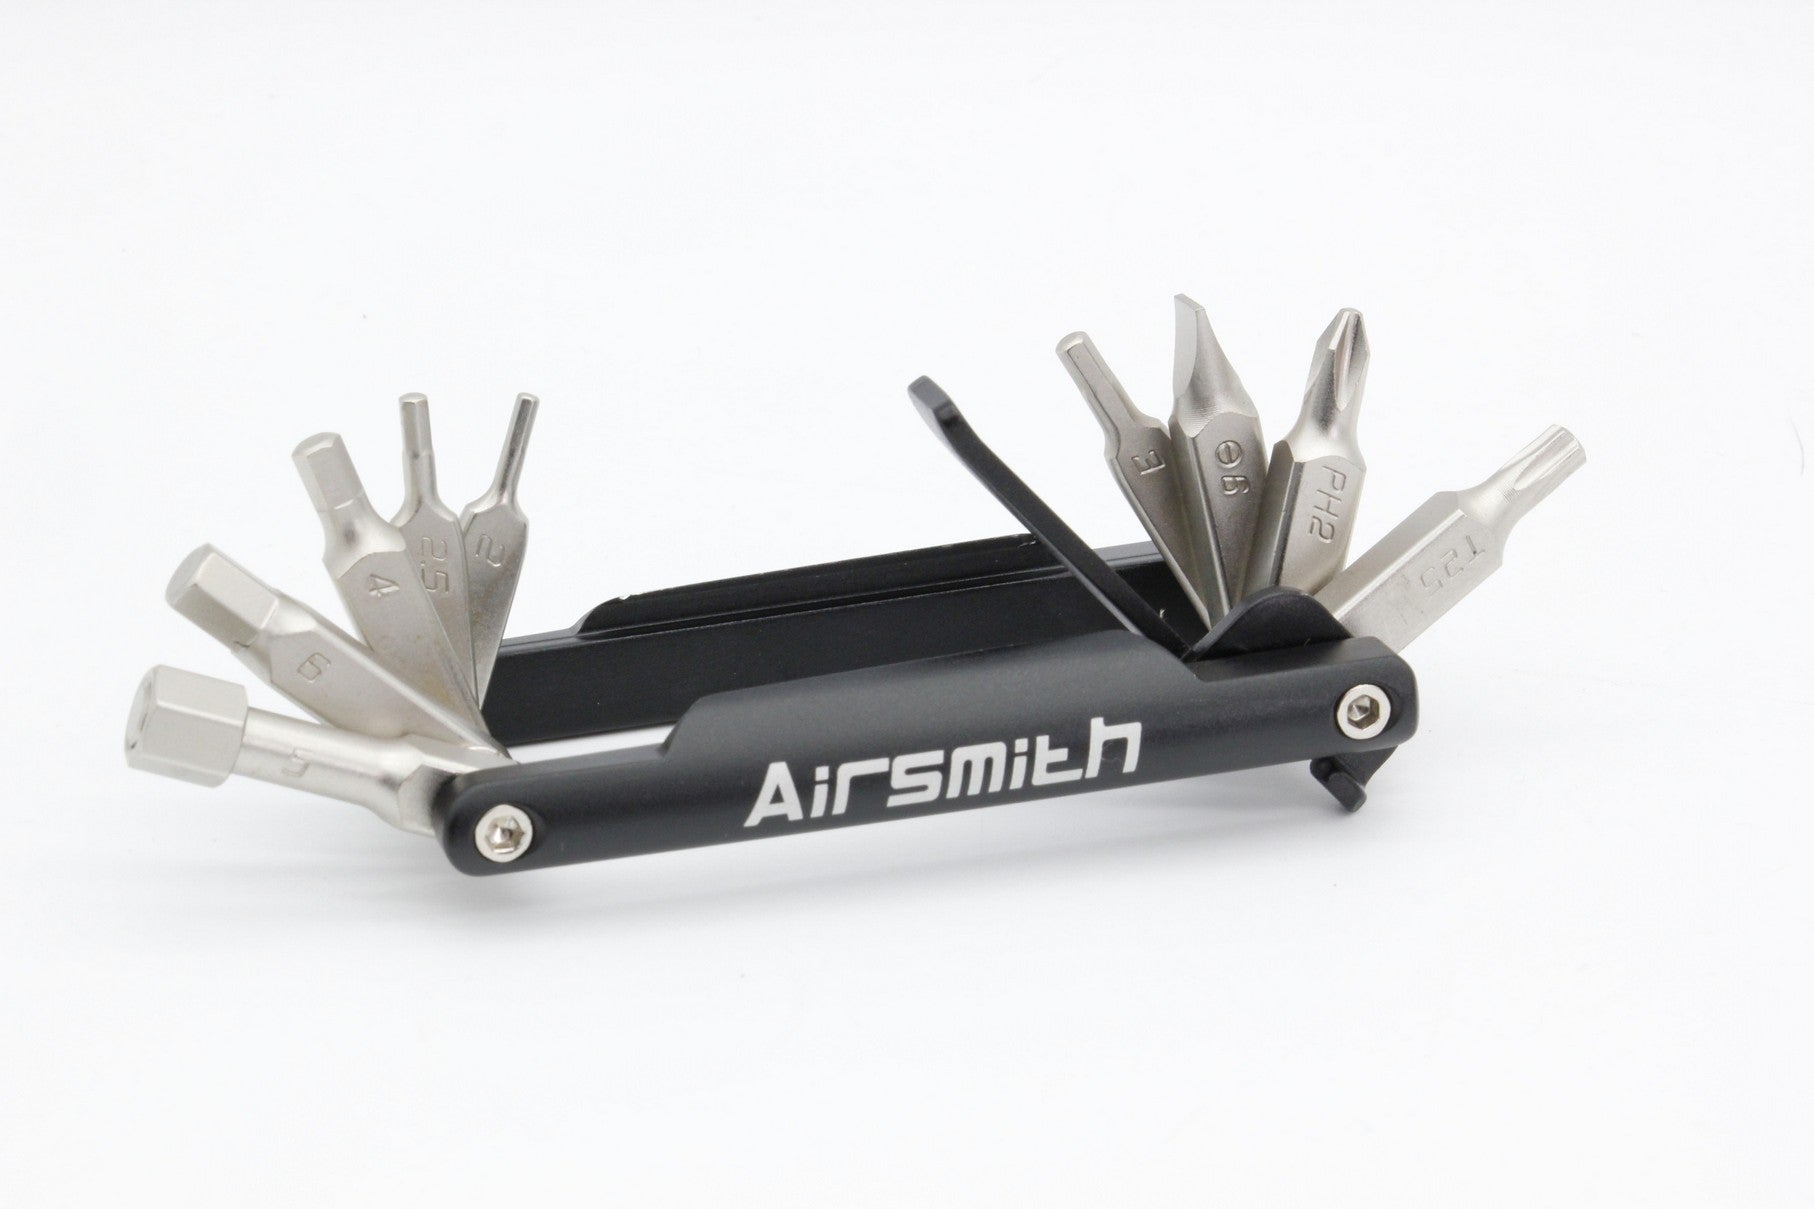 Airsmith FF-01 Bicycle Bike Multi Mini Tool Kit 12 in 1 w/Tire